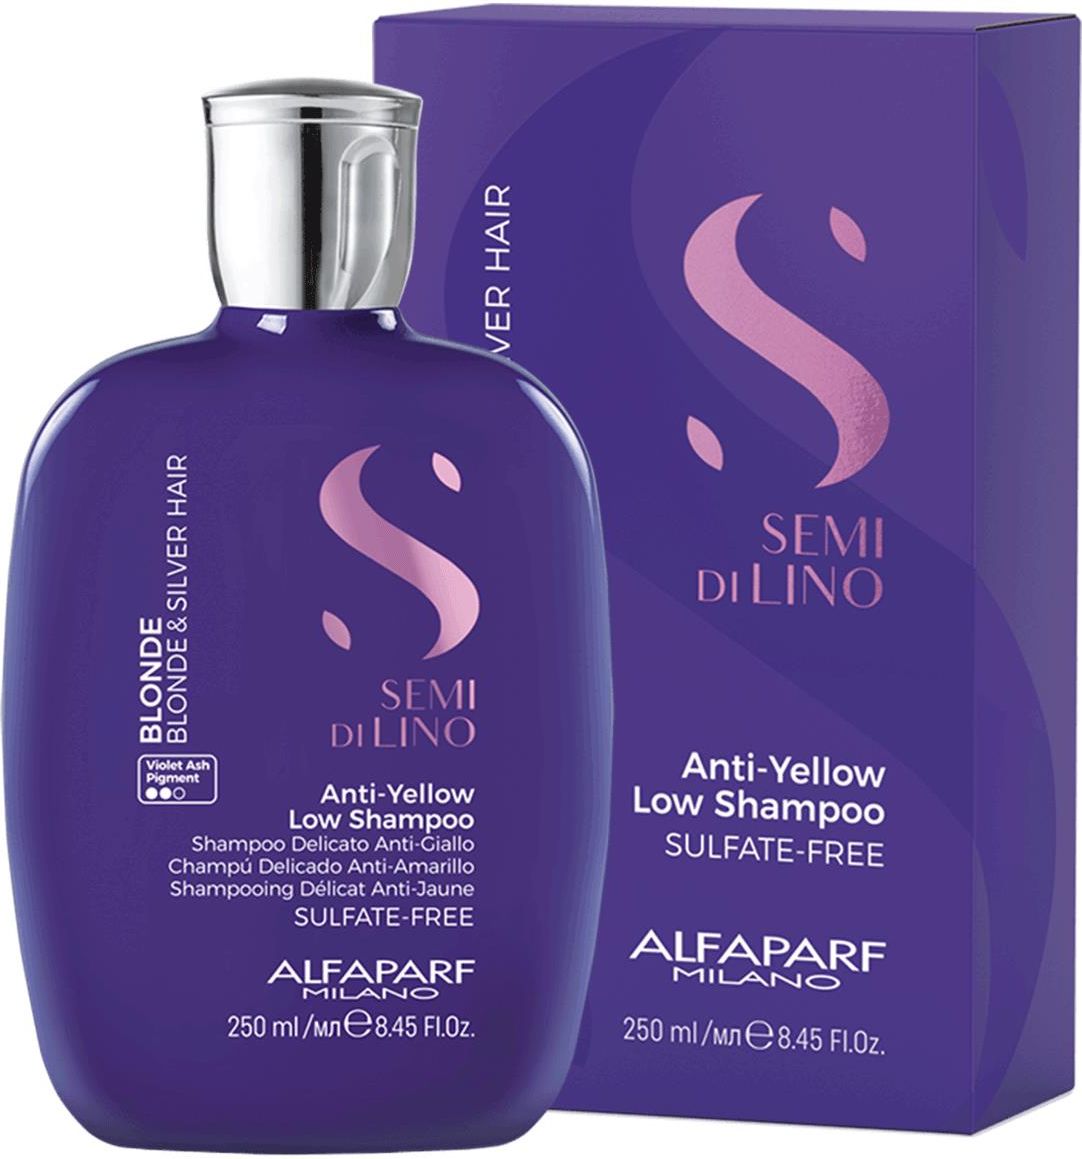 alfaparf fioletowy szampon opinie